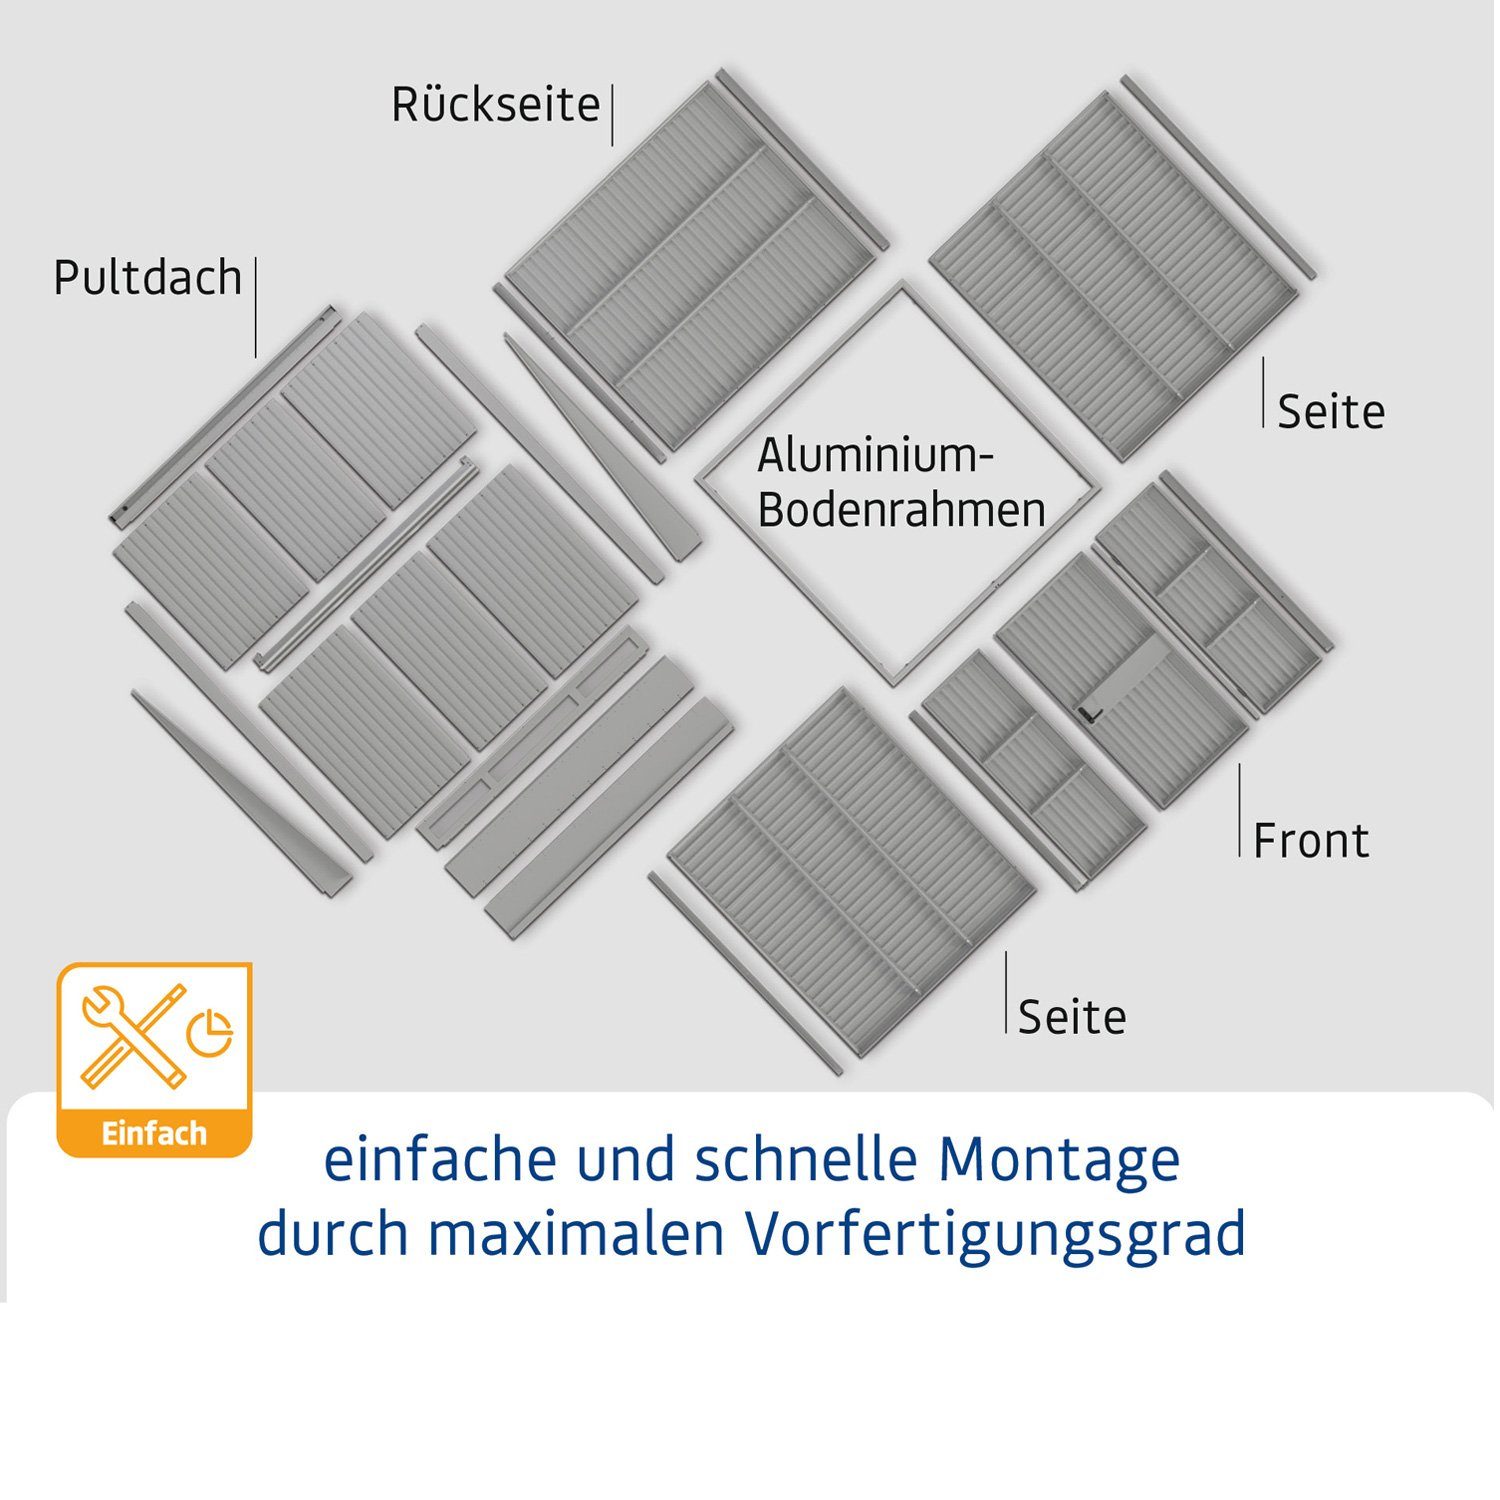 Hörmann Ecostar Gerätehaus Metall-Gerätehaus 2-flüglige Tür 2, moosgrün Trend mit Typ Pultdach